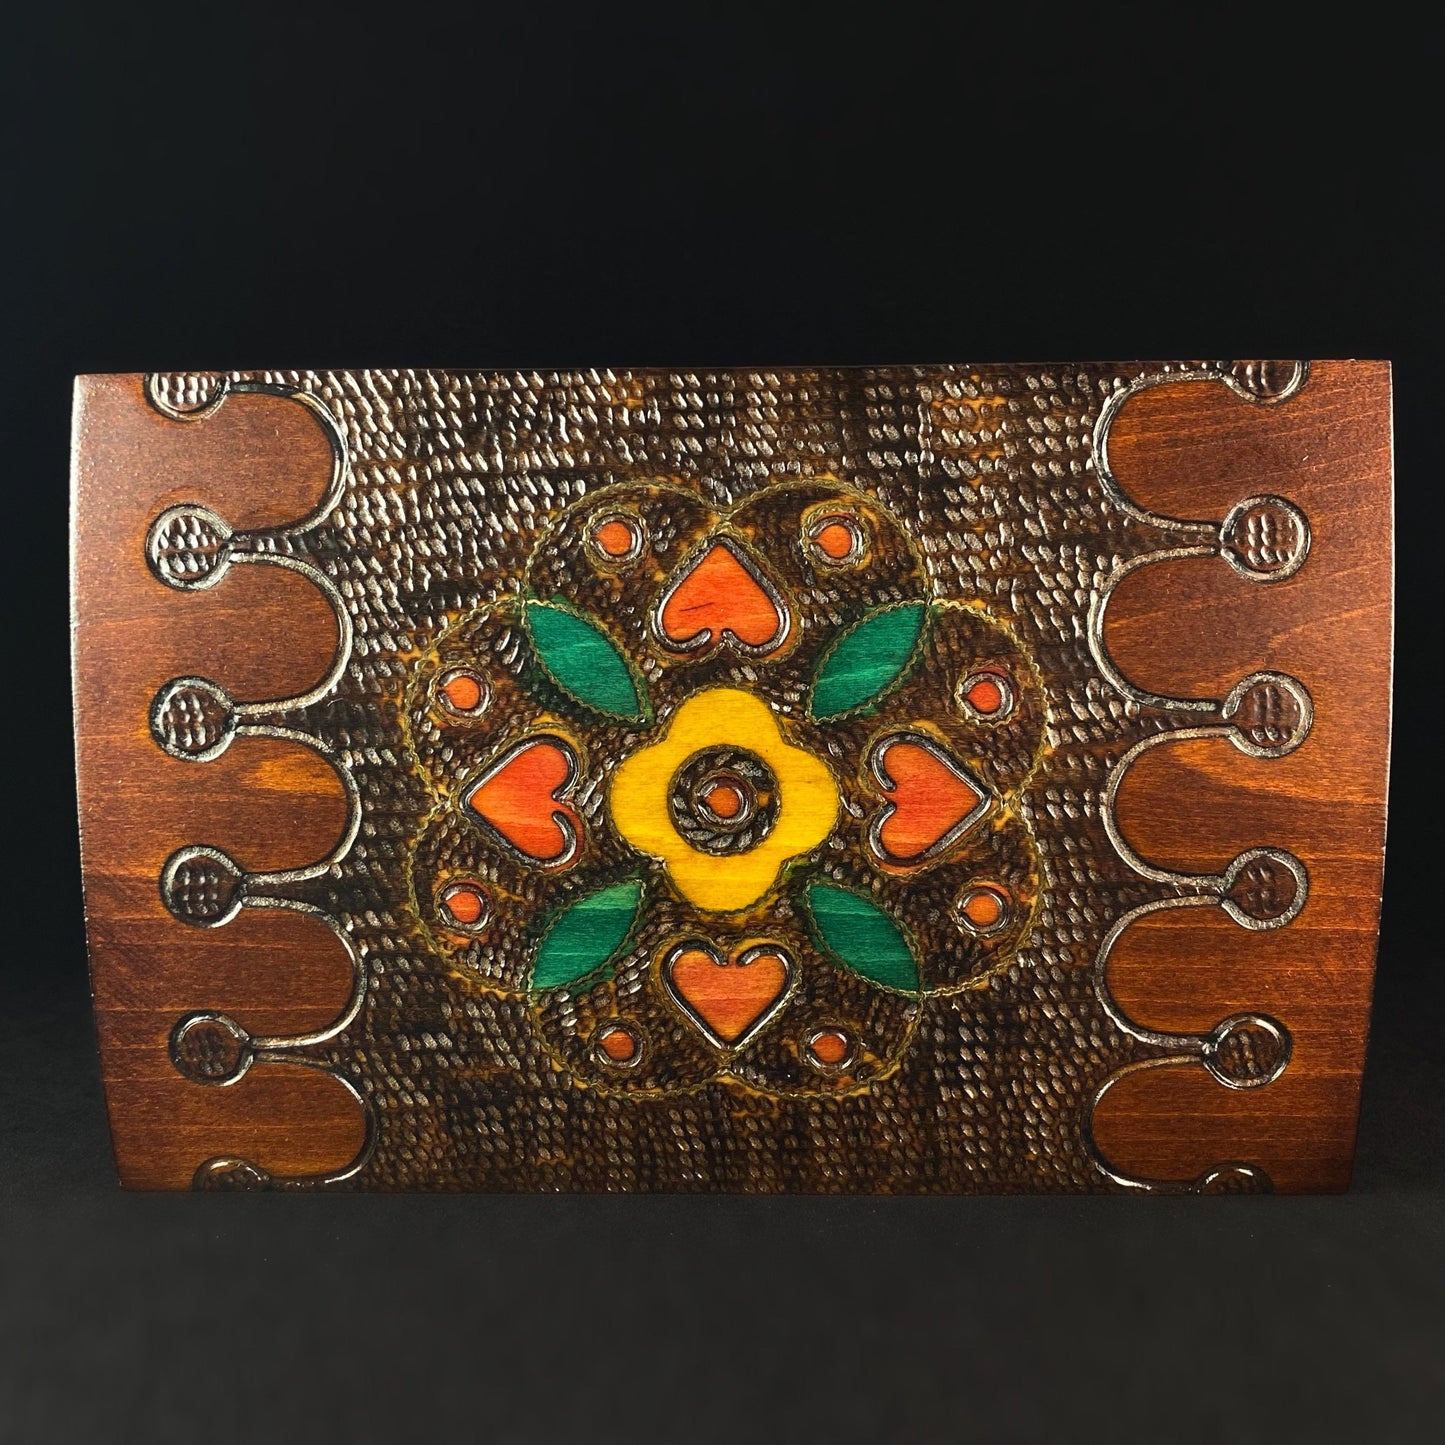 Jewelry Chest Handmade Hinged Rectangle Wooden Treasure Box